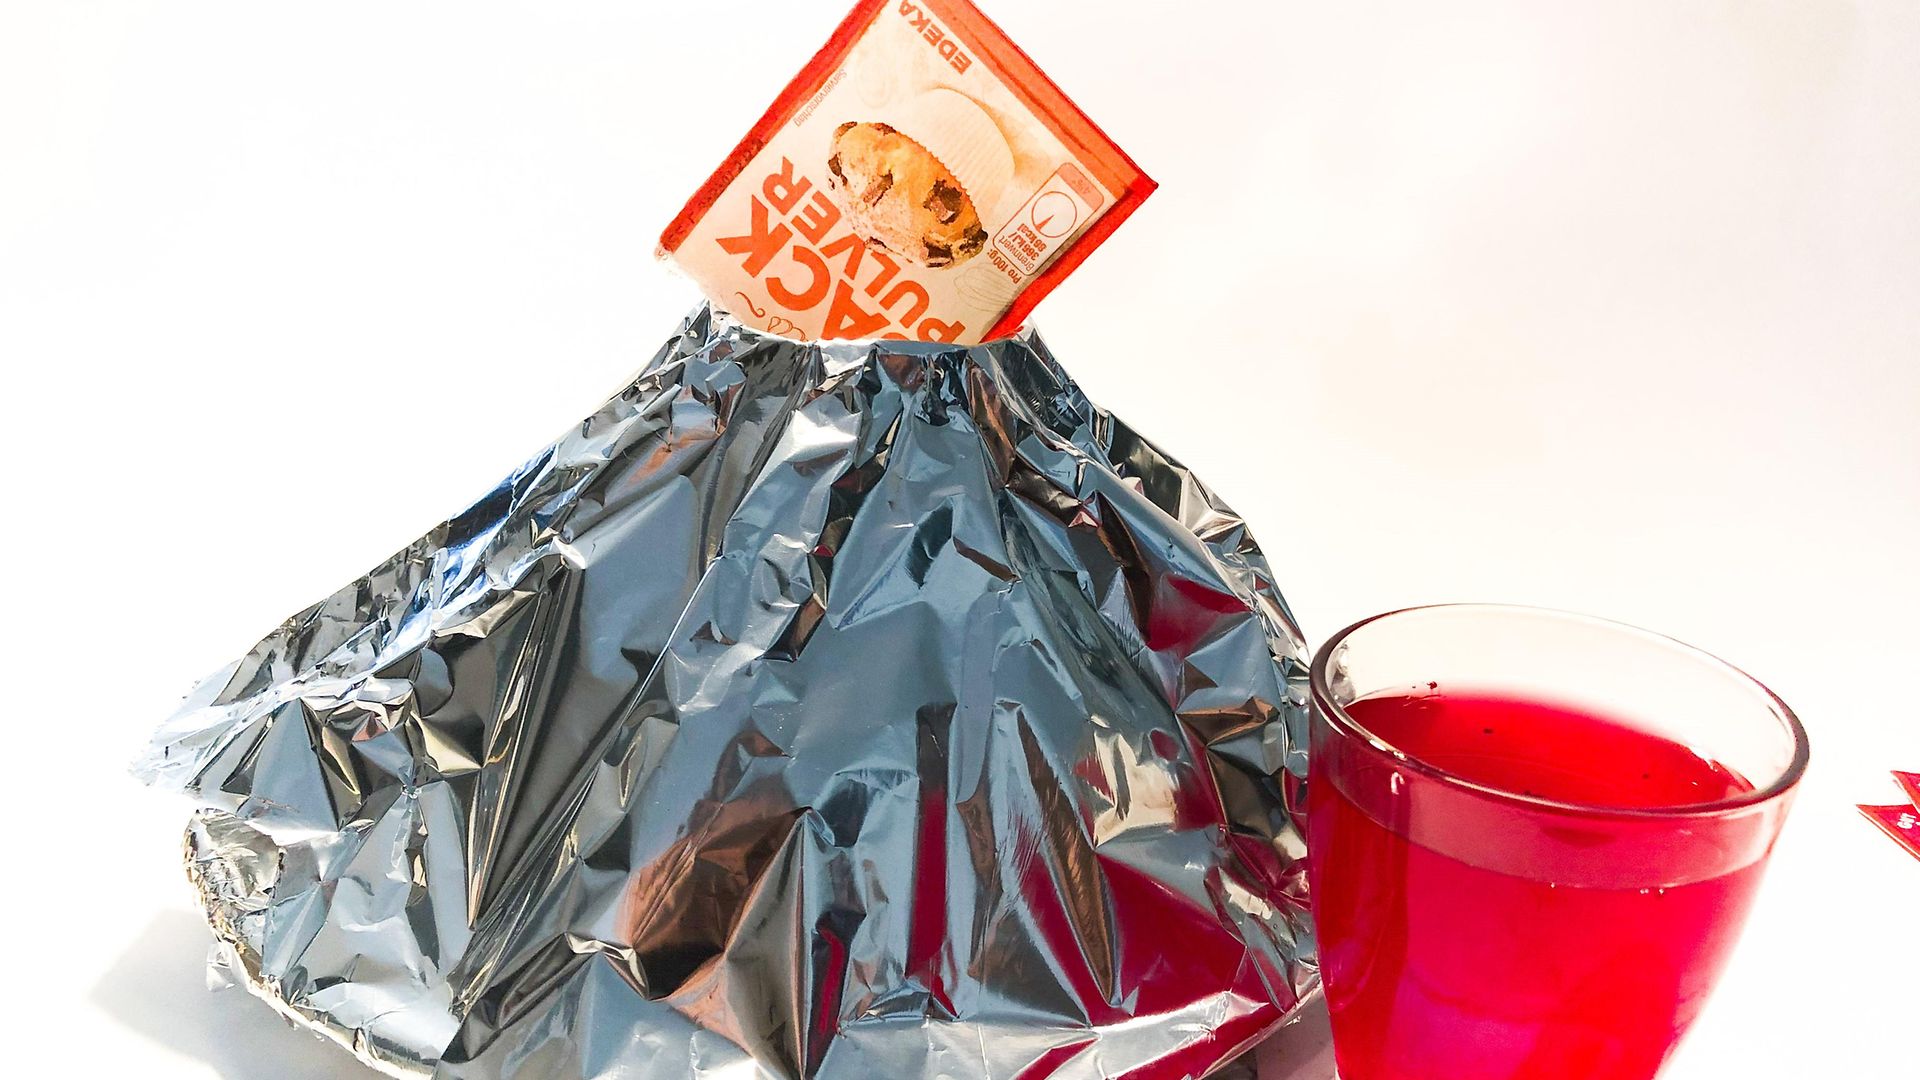 конус из алюминиевой фольги с пакетом разрыхлителя сверху и стаканом, наполненным красной водой